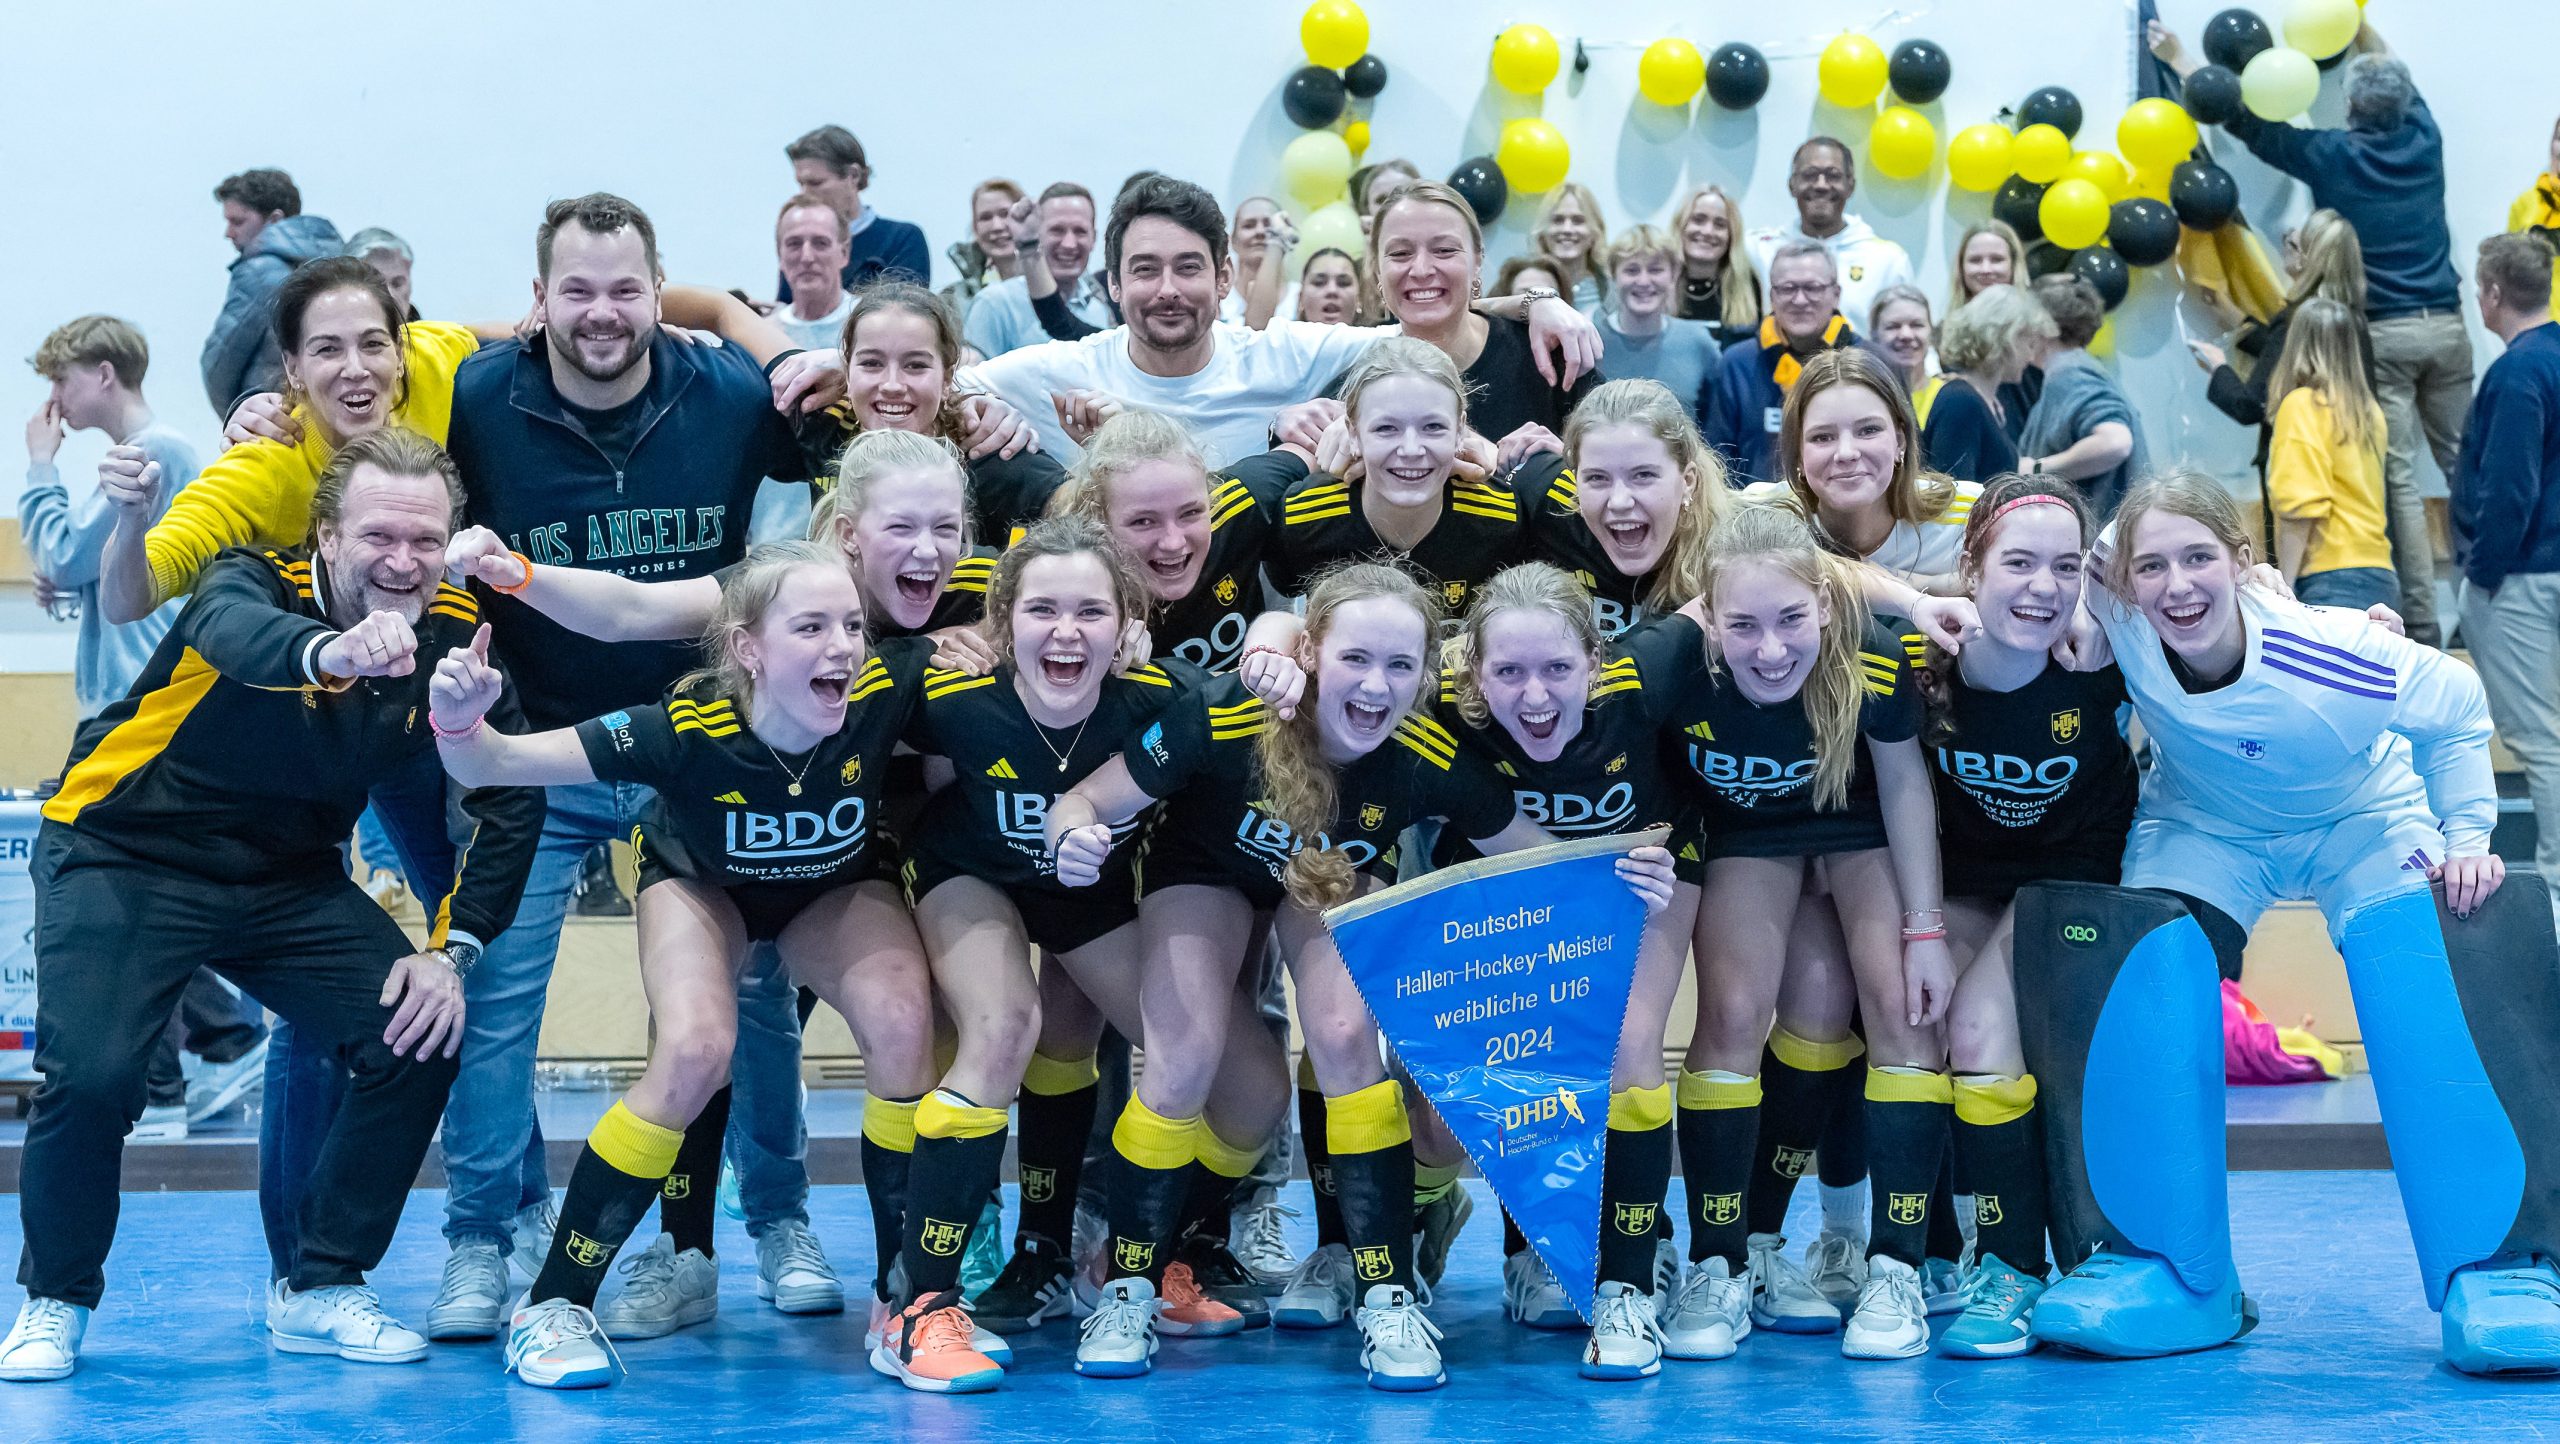 Jugendhockey: weibliche U16 wird Deutscher Meister in der Halle 2023/24